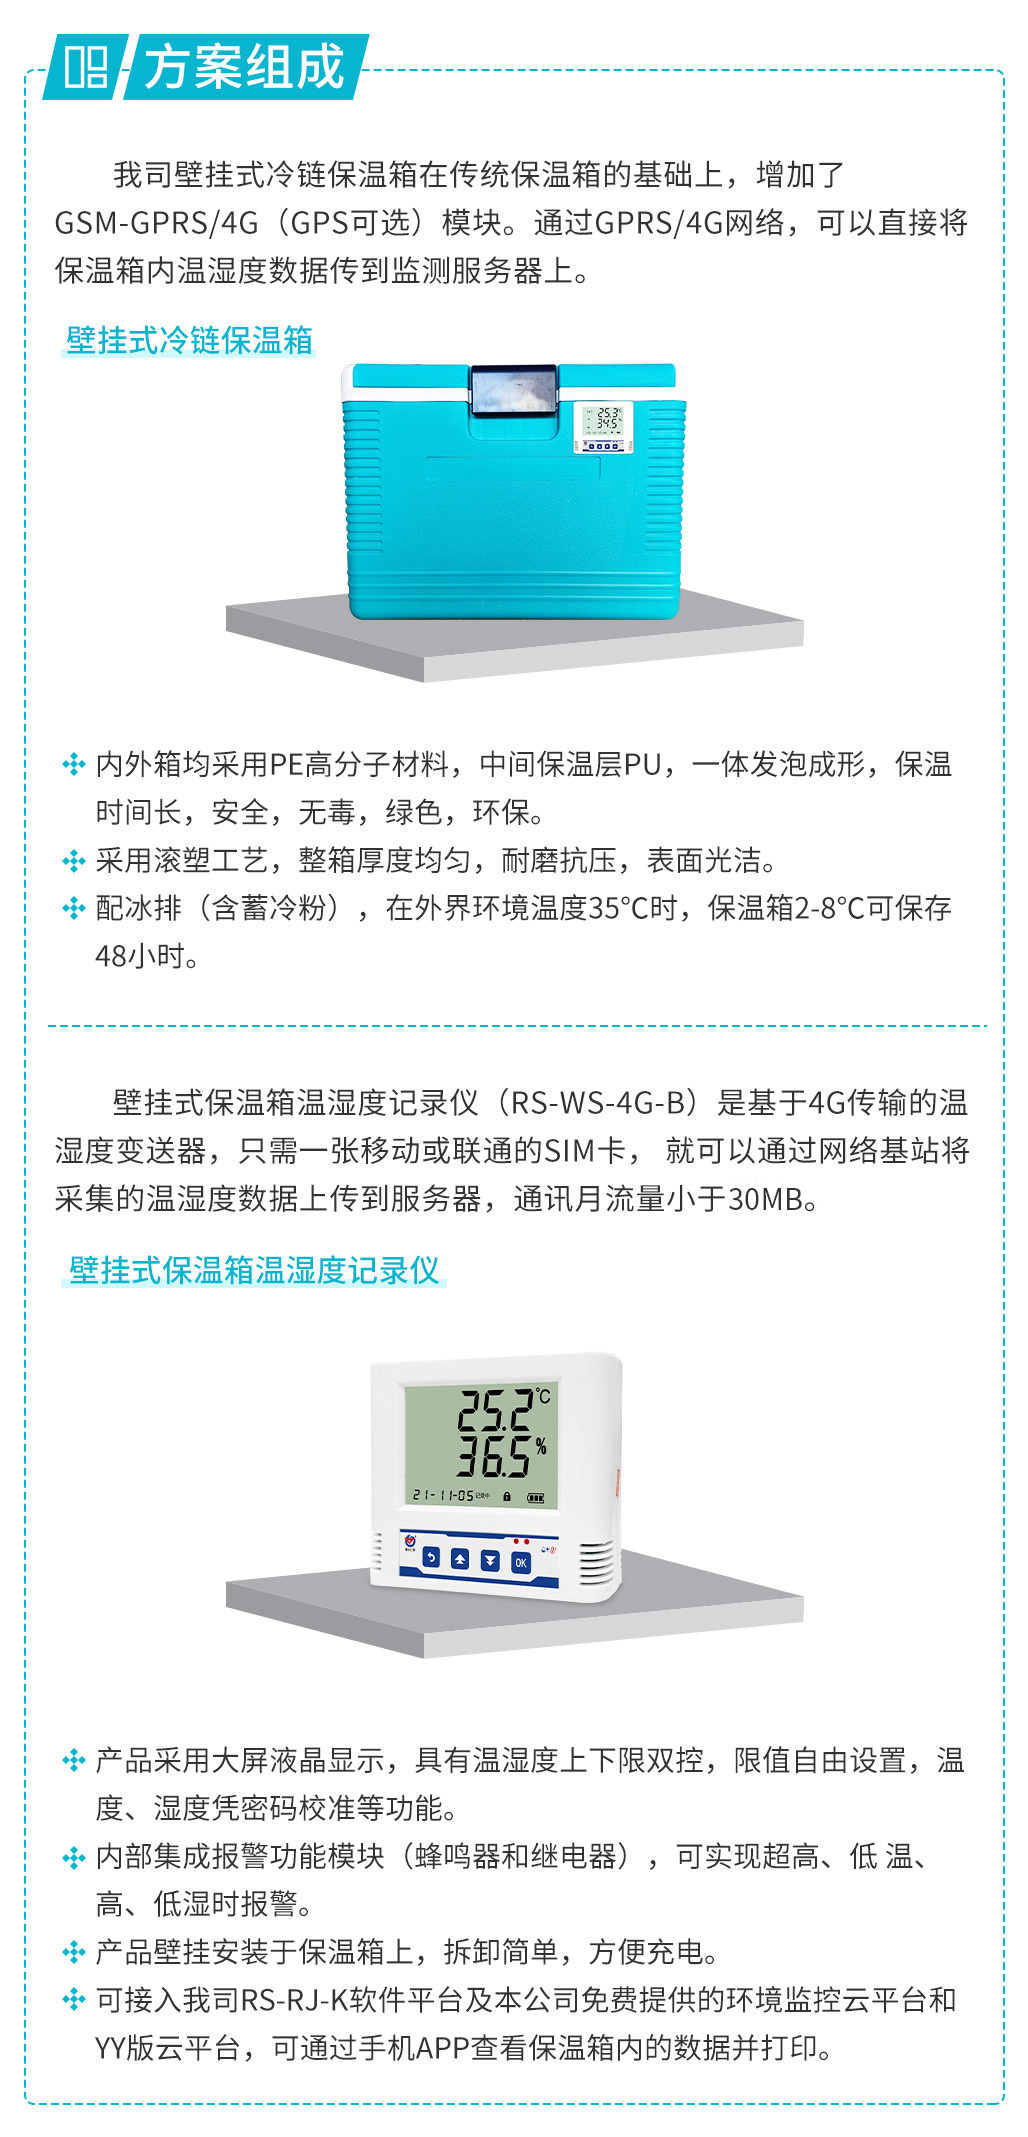 壁挂式保温箱温湿度监测系统.jpg